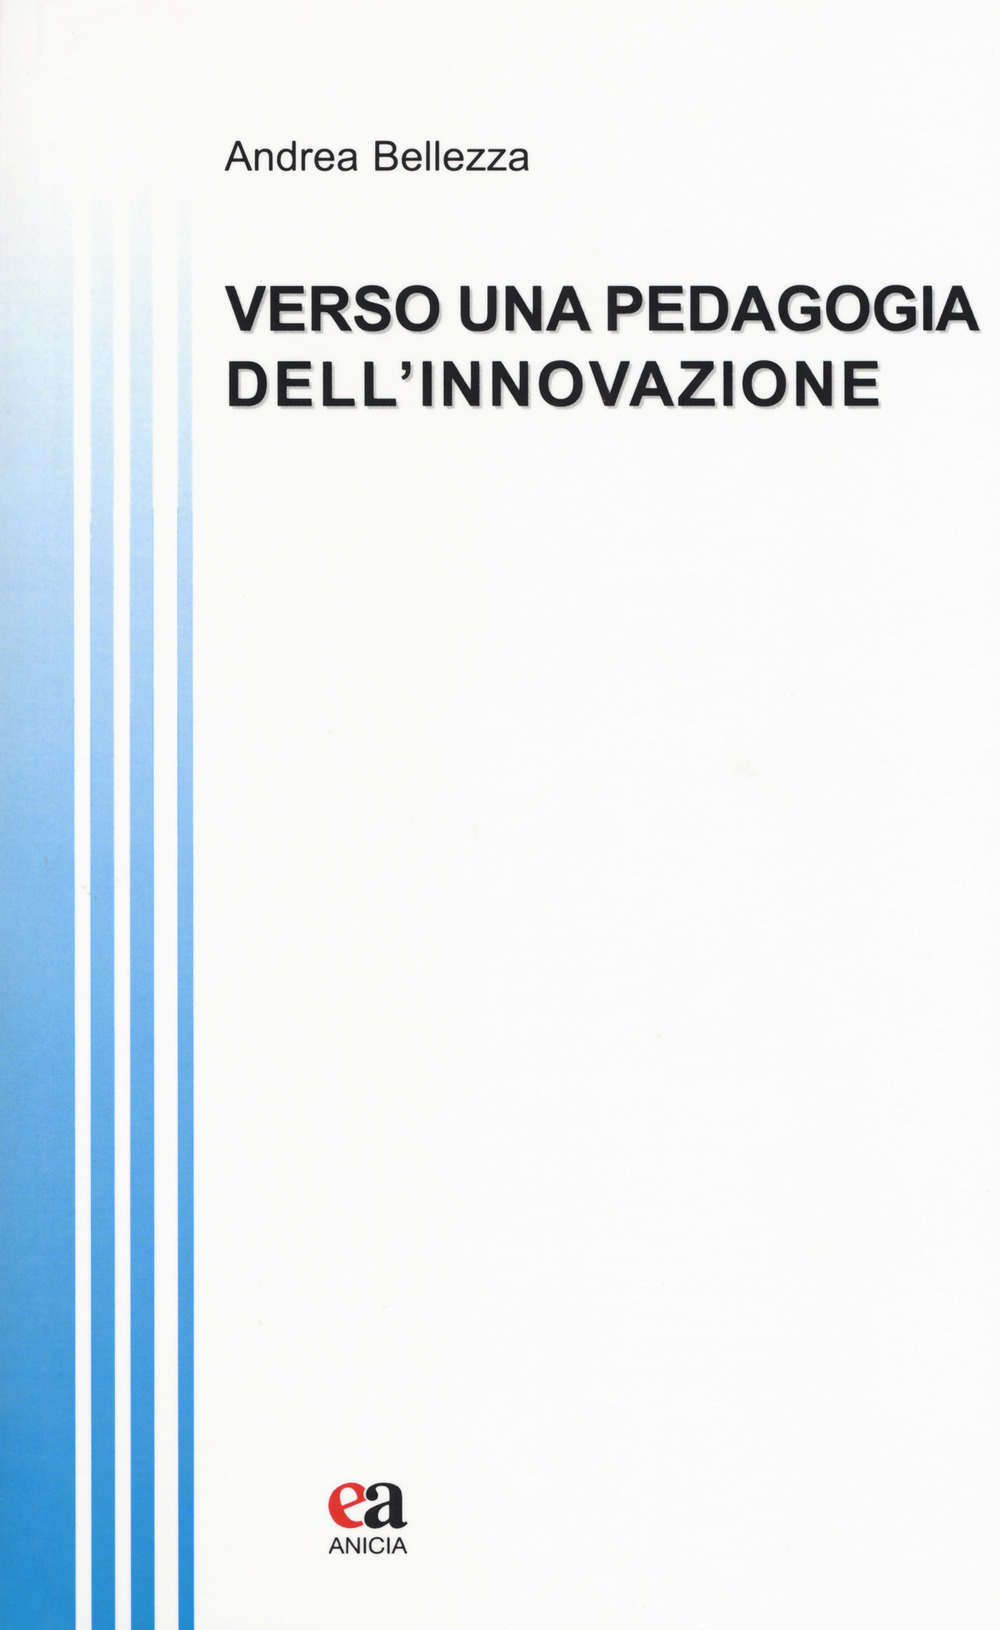 Image of Verso una pedagogia dell'innovazione